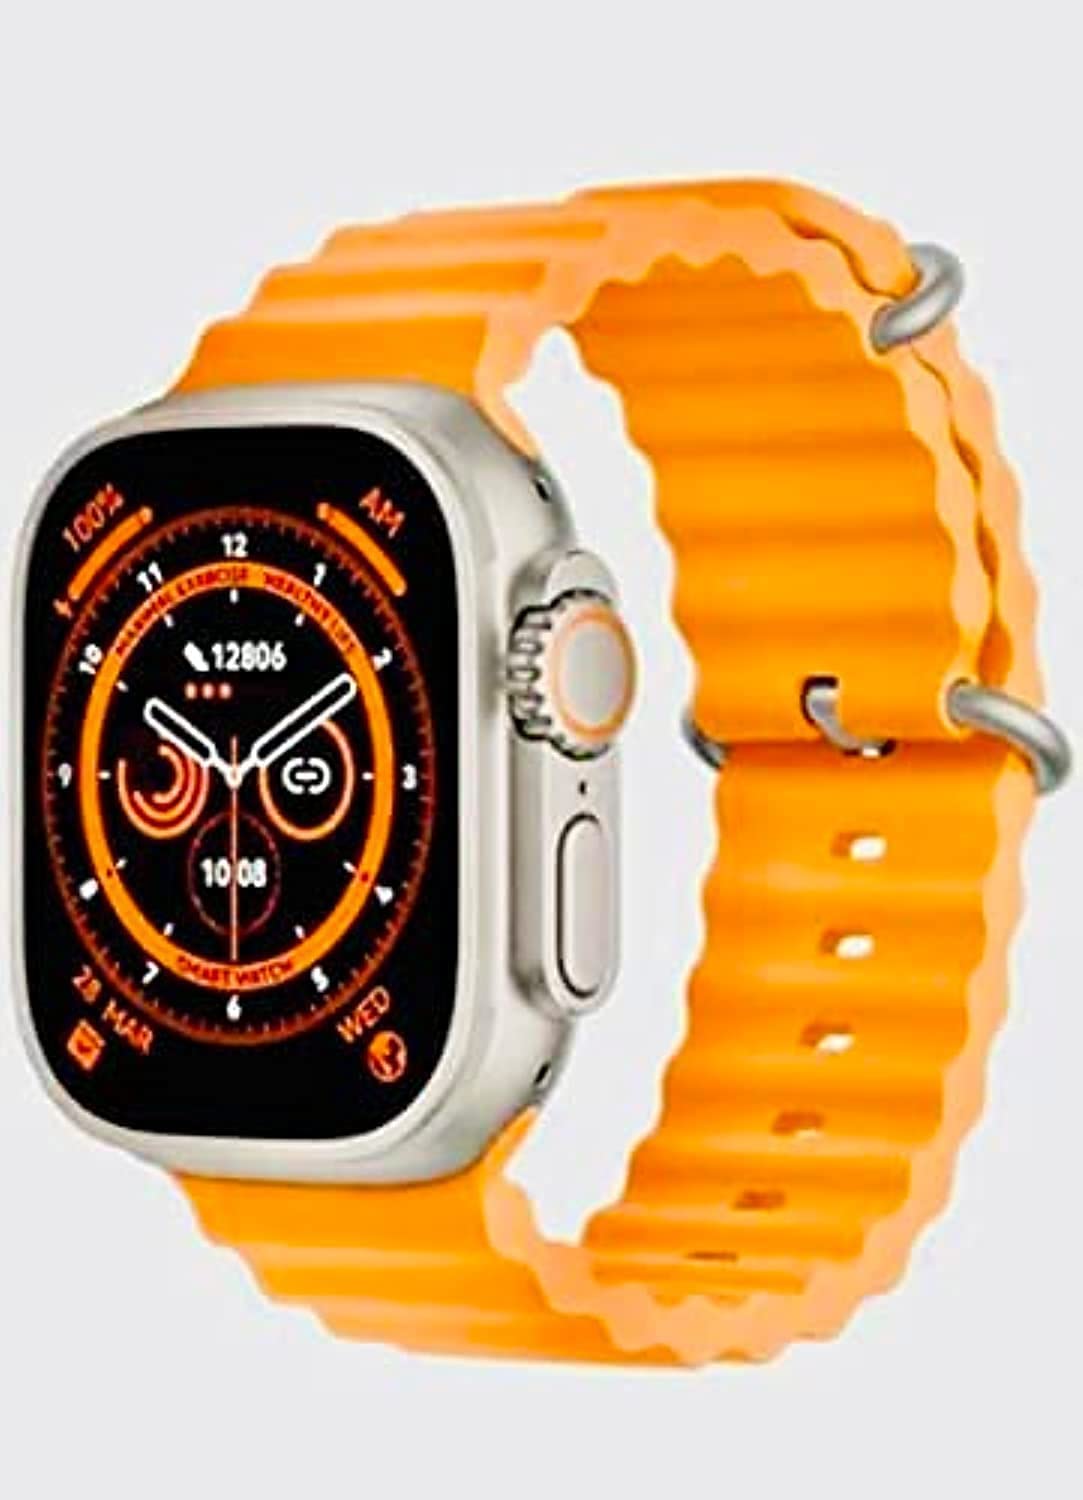 ساعة سمارت X8 الترا سلسلة 8 49 ملم Watch X8 Ultra ان اف سي لمراقبة درجة حرارة الجسم مع خاصية الاتصال اللاسلكي بالبلوتوث (سوار برتقالي)